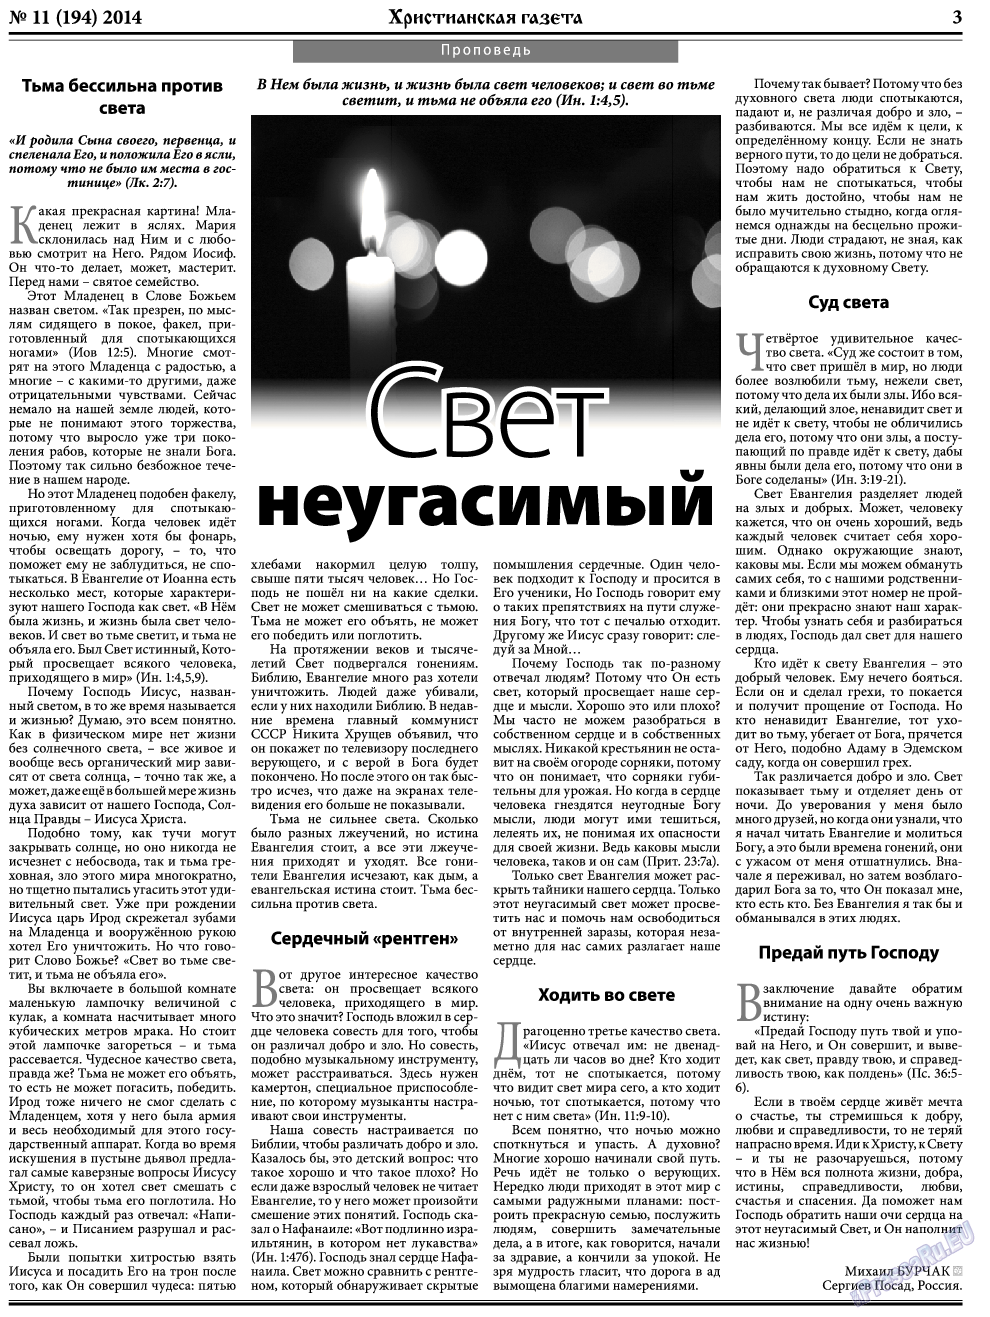 Христианская газета, газета. 2014 №11 стр.3